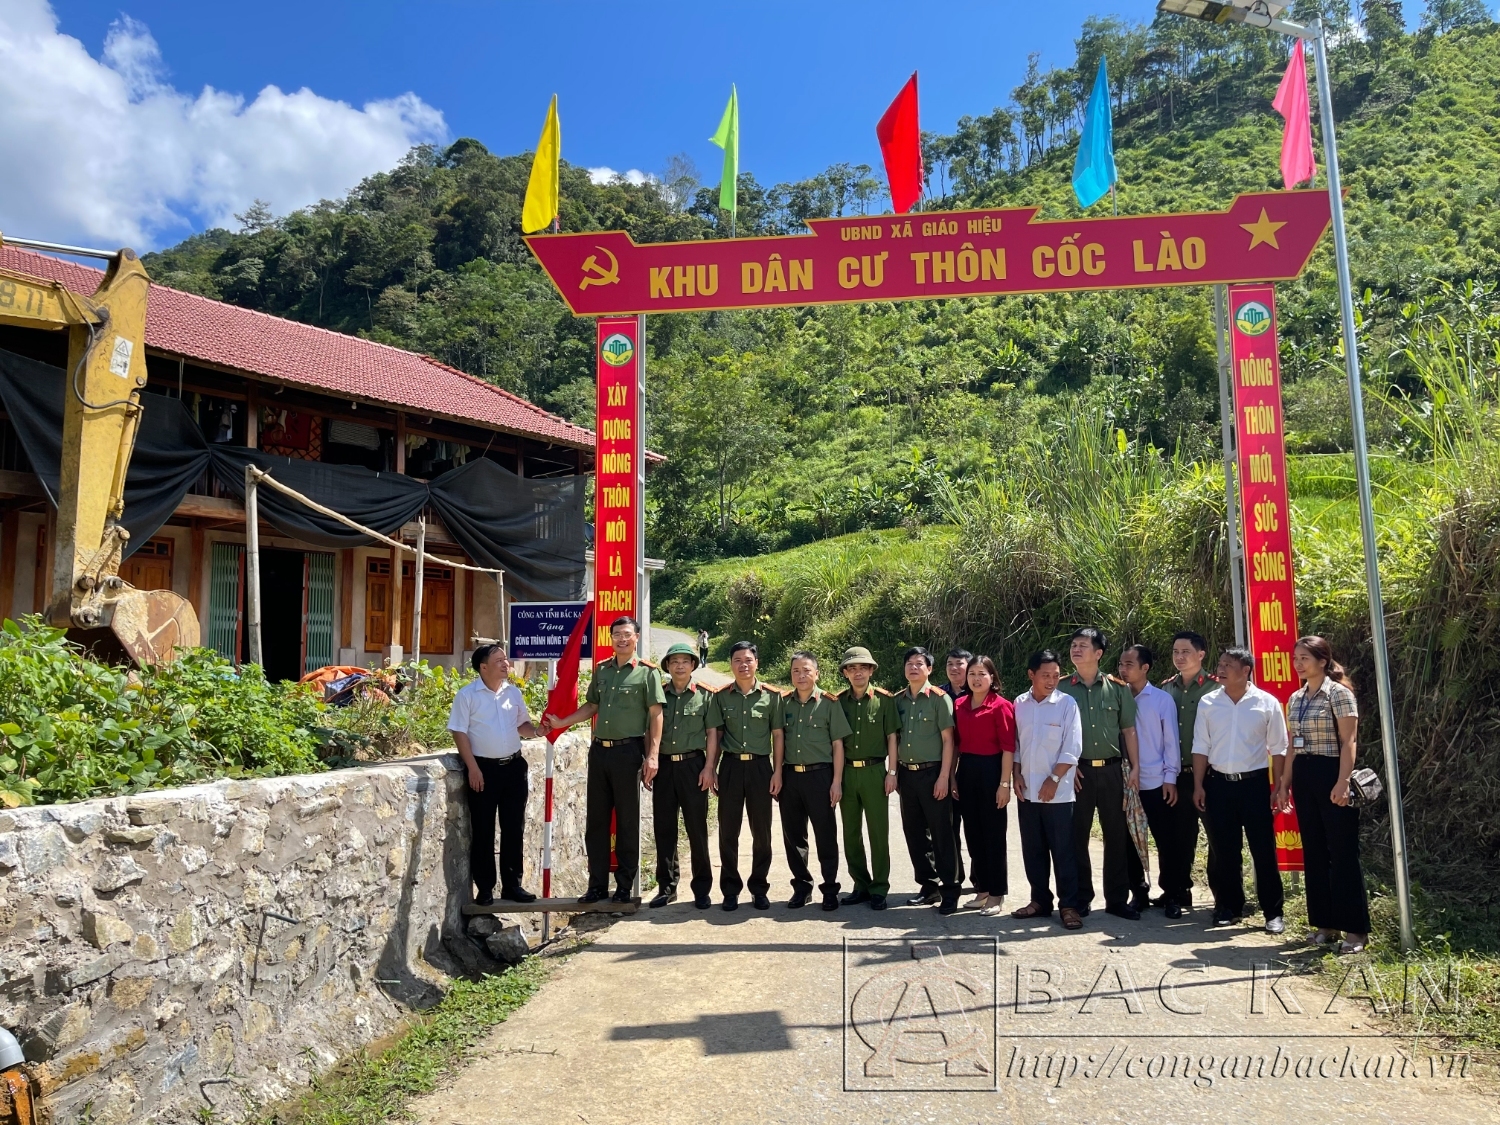 Khánh thành công trình cổng chào khu dân cư thôn Cốc Lào